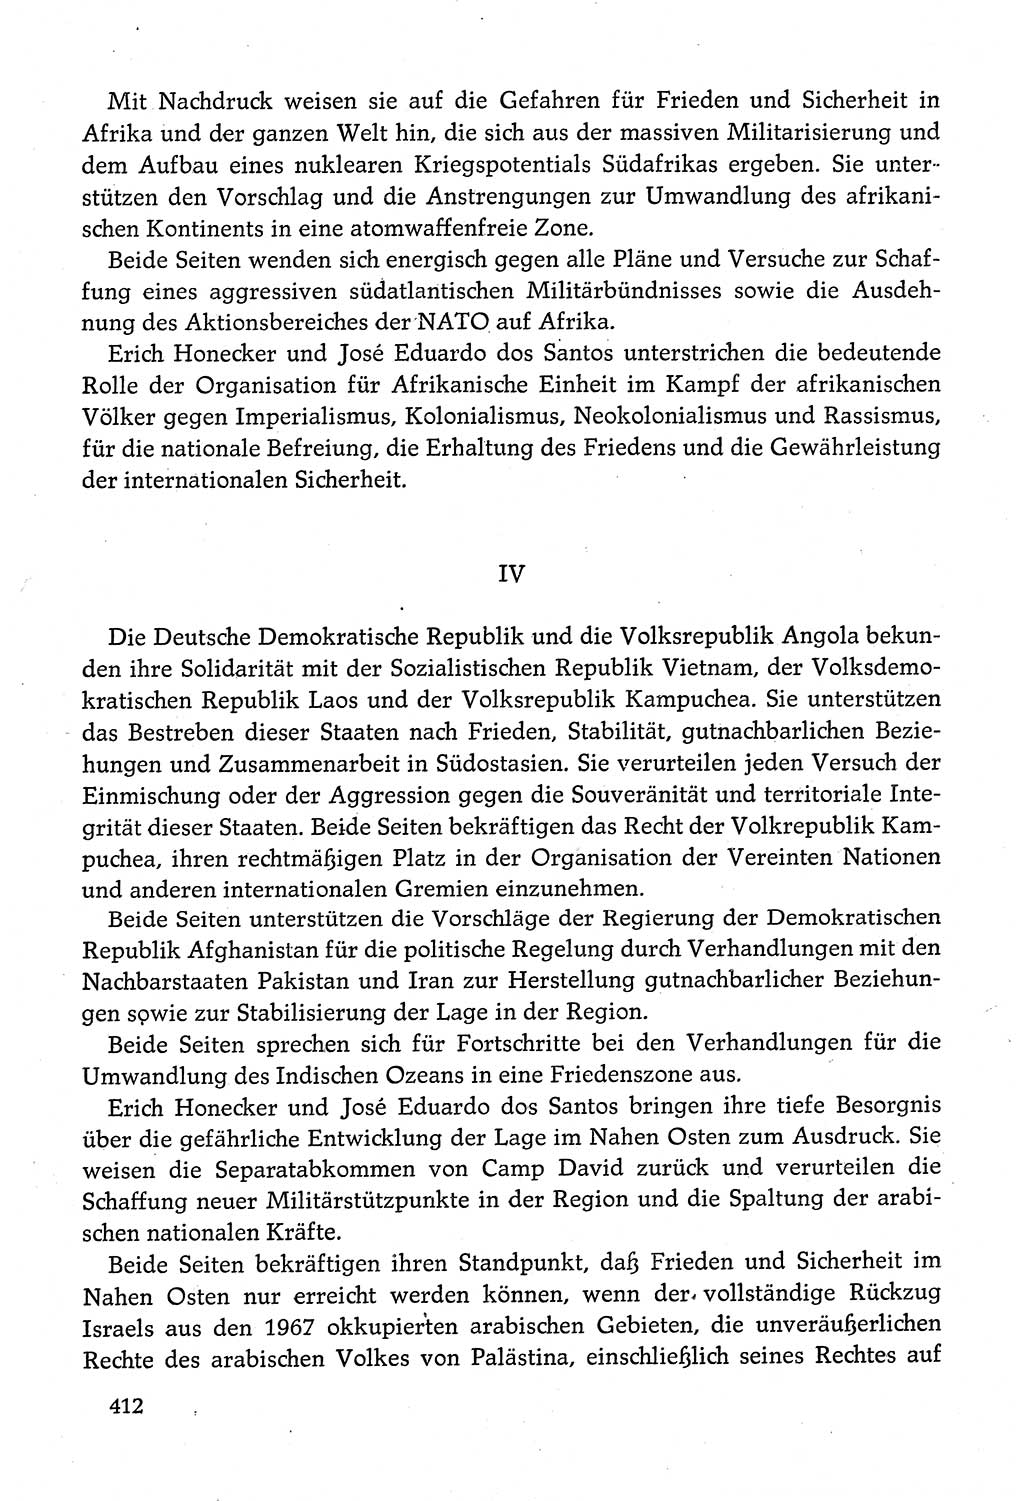 Dokumente der Sozialistischen Einheitspartei Deutschlands (SED) [Deutsche Demokratische Republik (DDR)] 1980-1981, Seite 412 (Dok. SED DDR 1980-1981, S. 412)